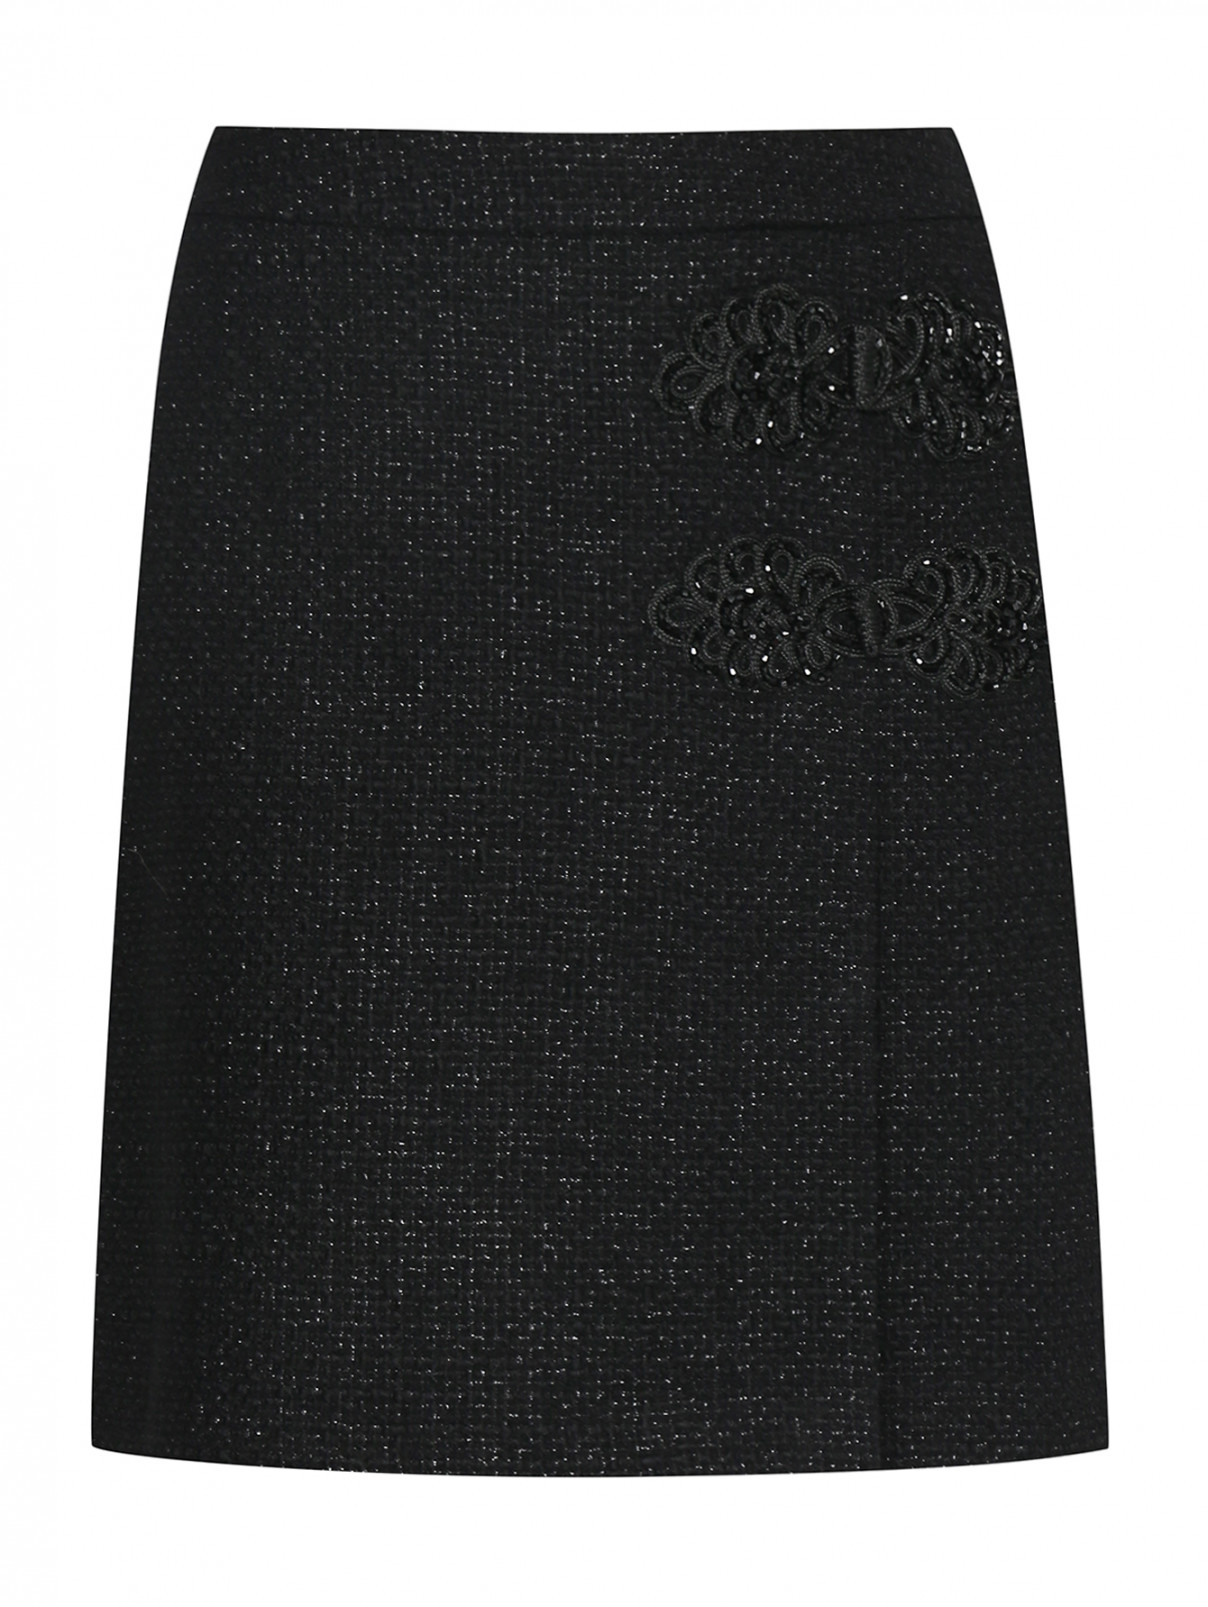 Юбка-мини из буклированной ткани Moschino Boutique  –  Общий вид  – Цвет:  Черный